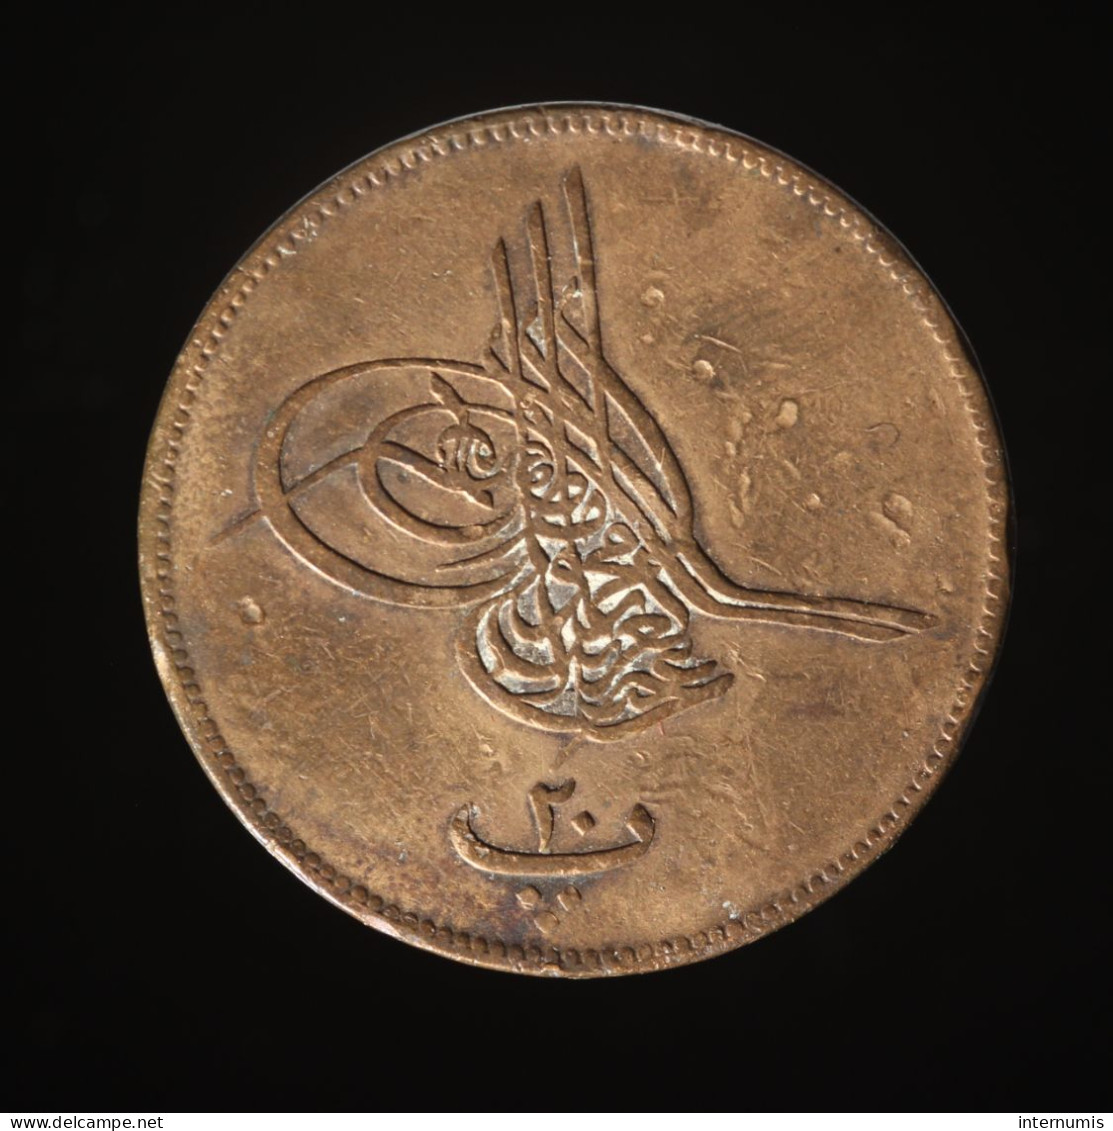  Egypte / Egypt, Abdulaziz, 20 Para, AH 1277//3 (1862), , Bronze, TTB (EF),
KM#244 - Egypt